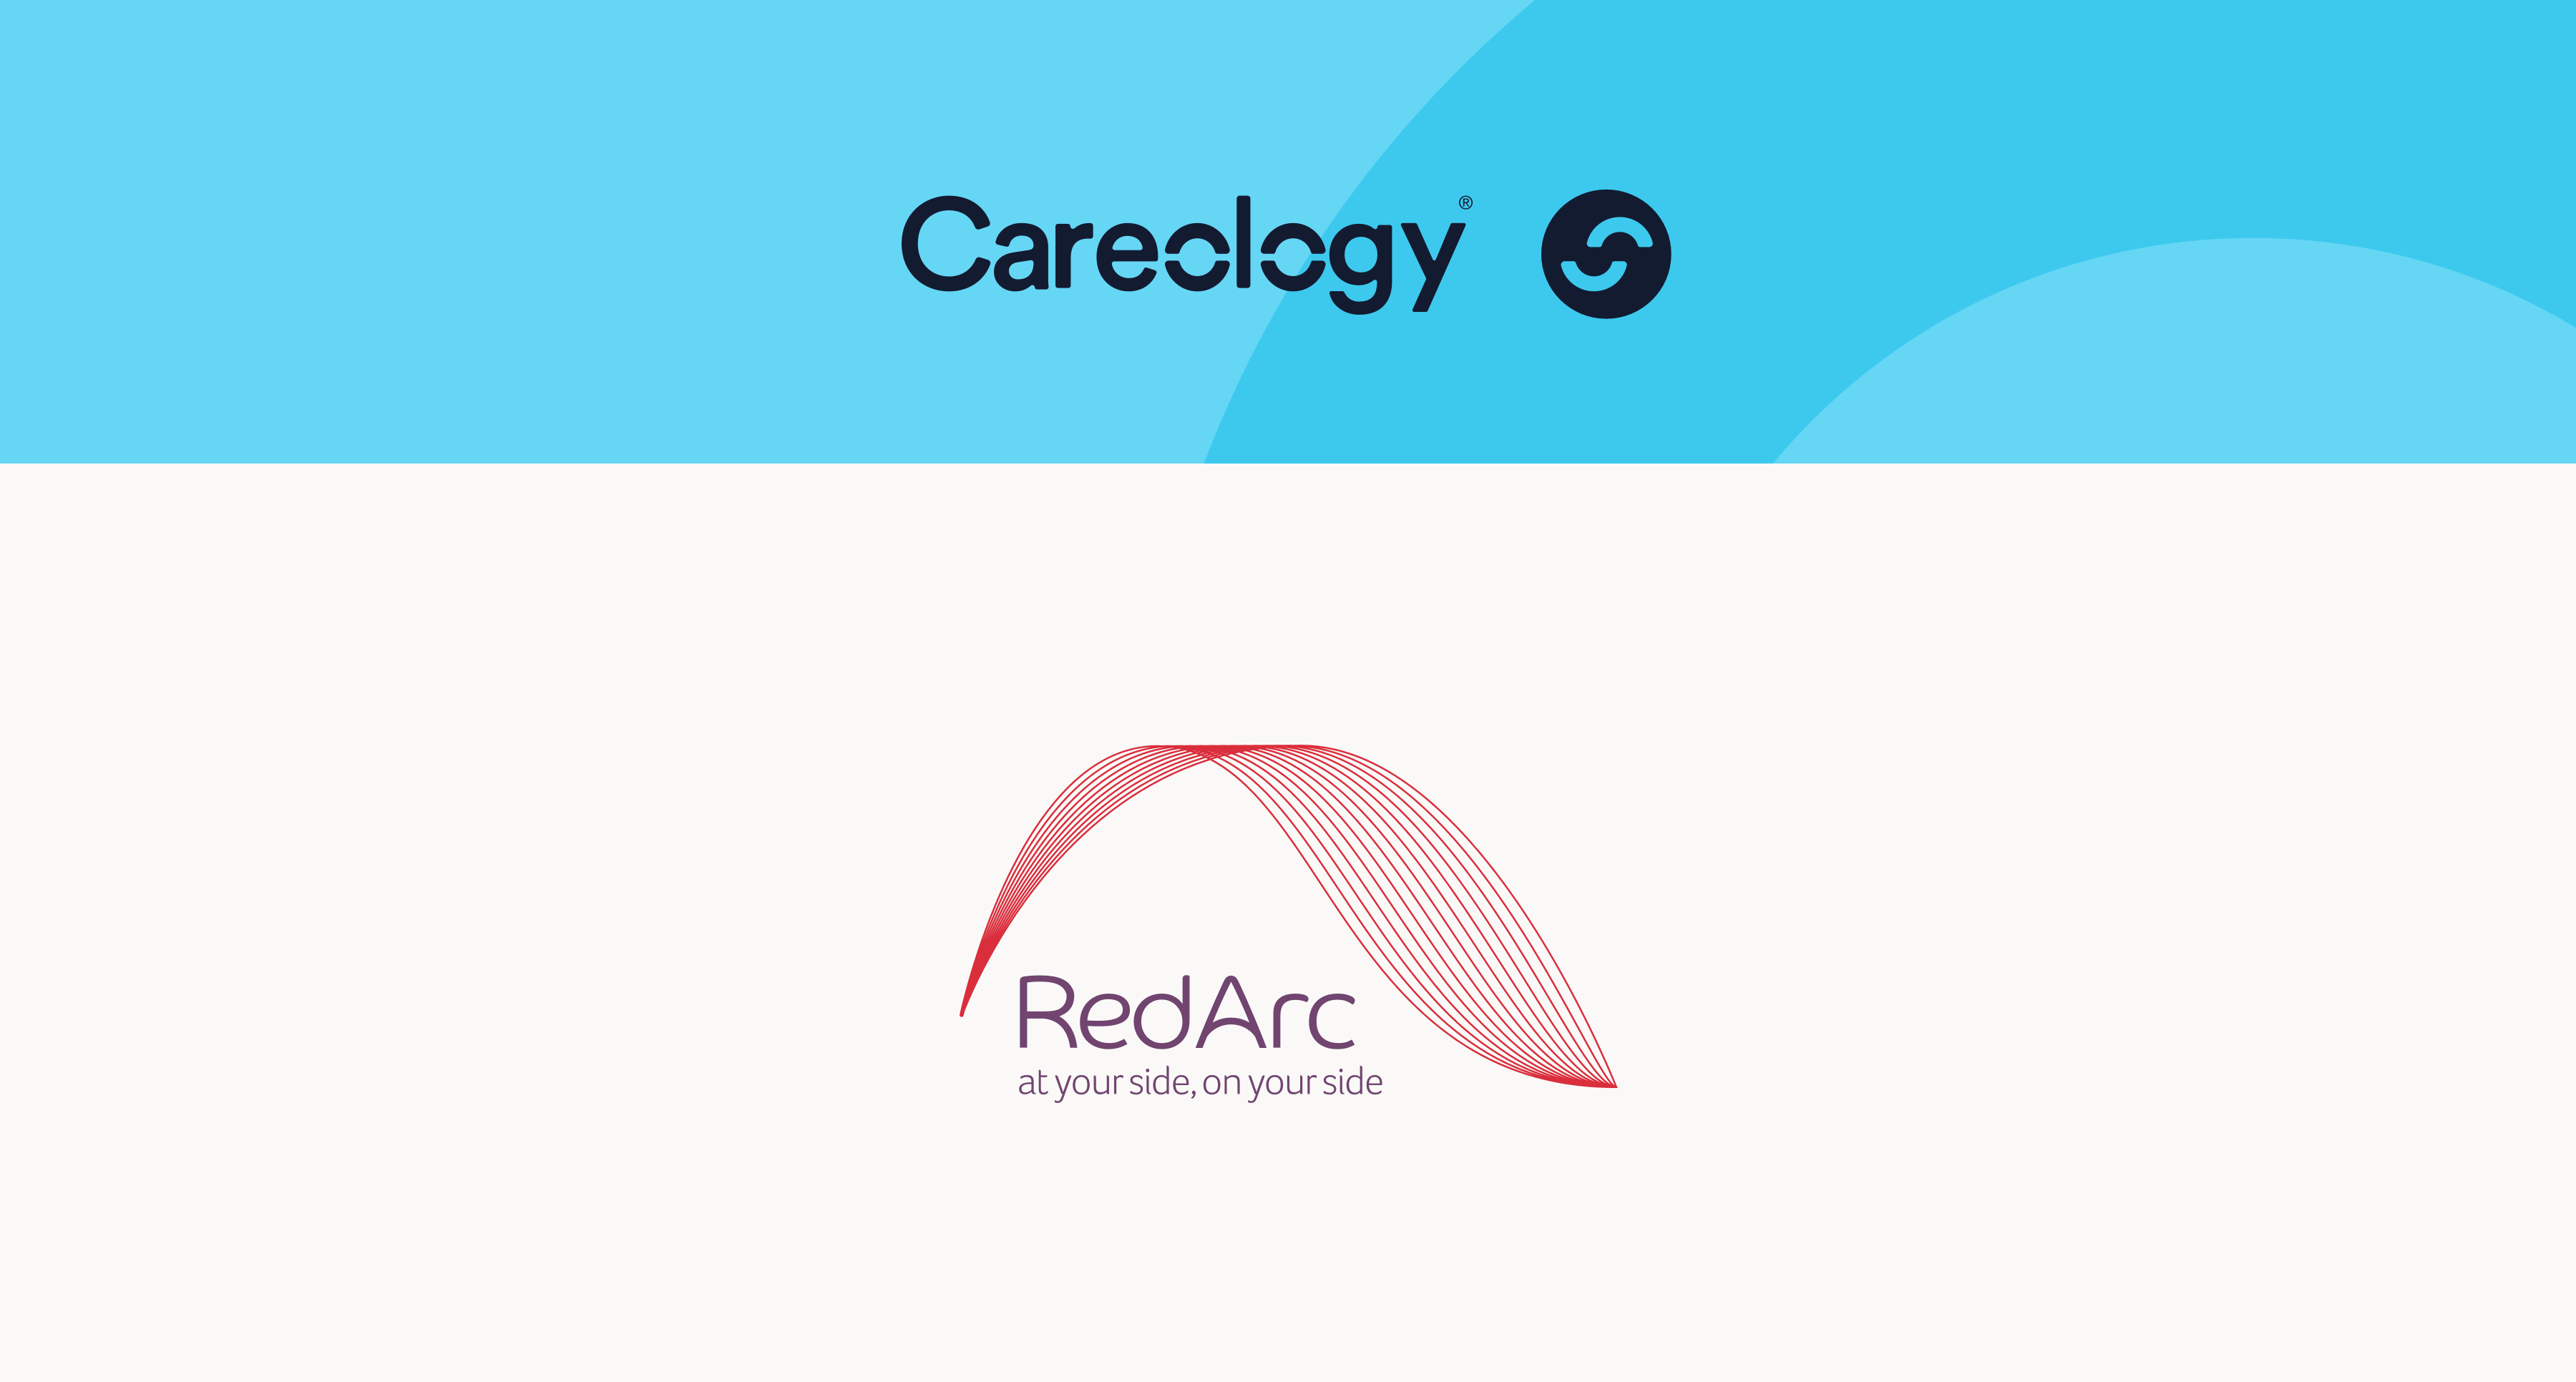 Careology and RedArc Partnership